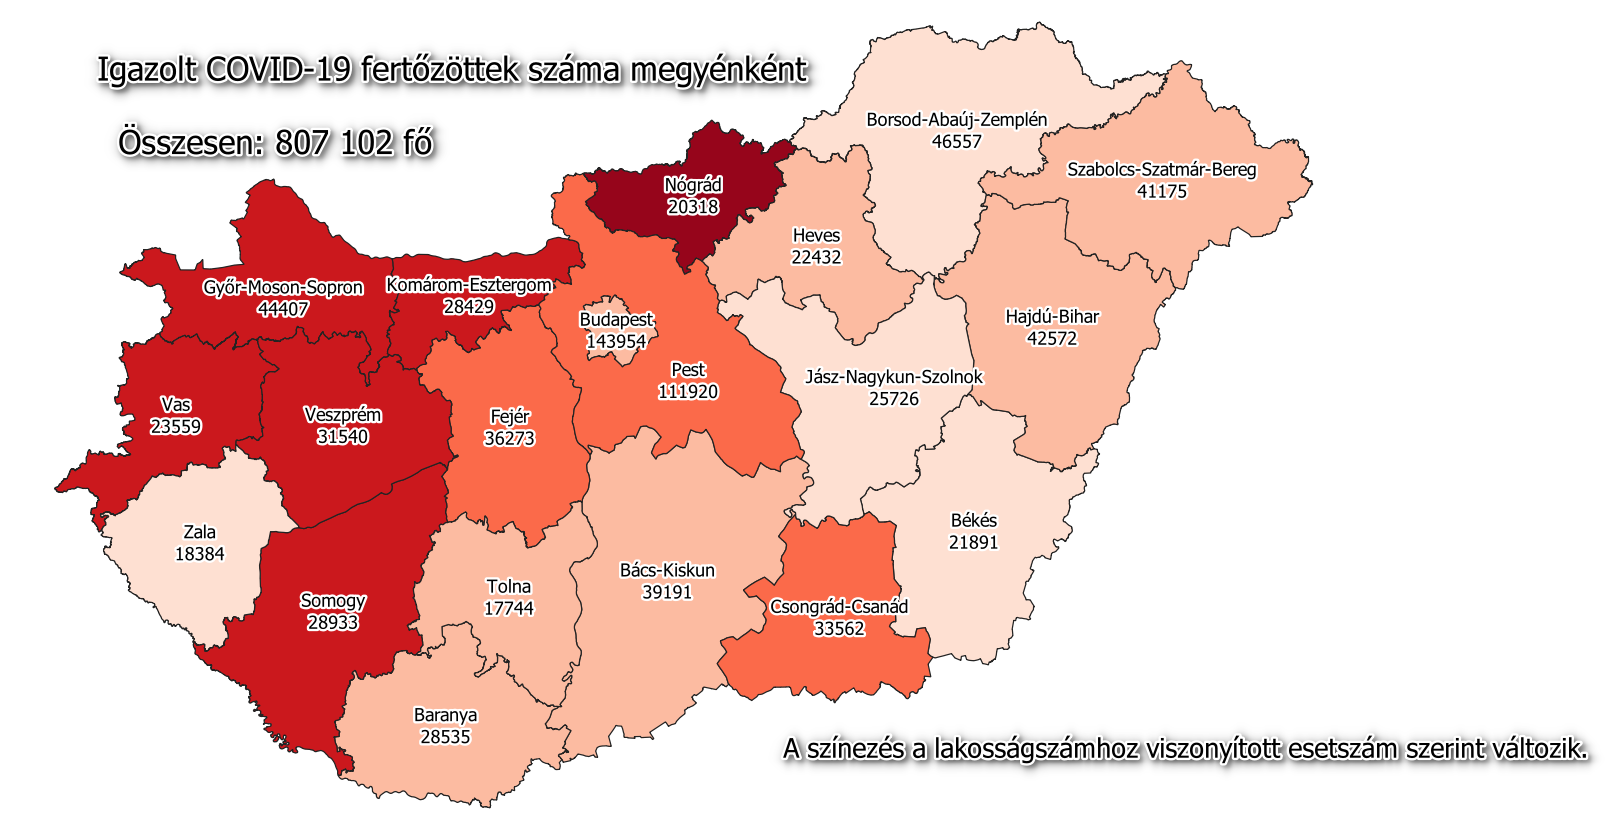 हंगरी कोविड नक्शा